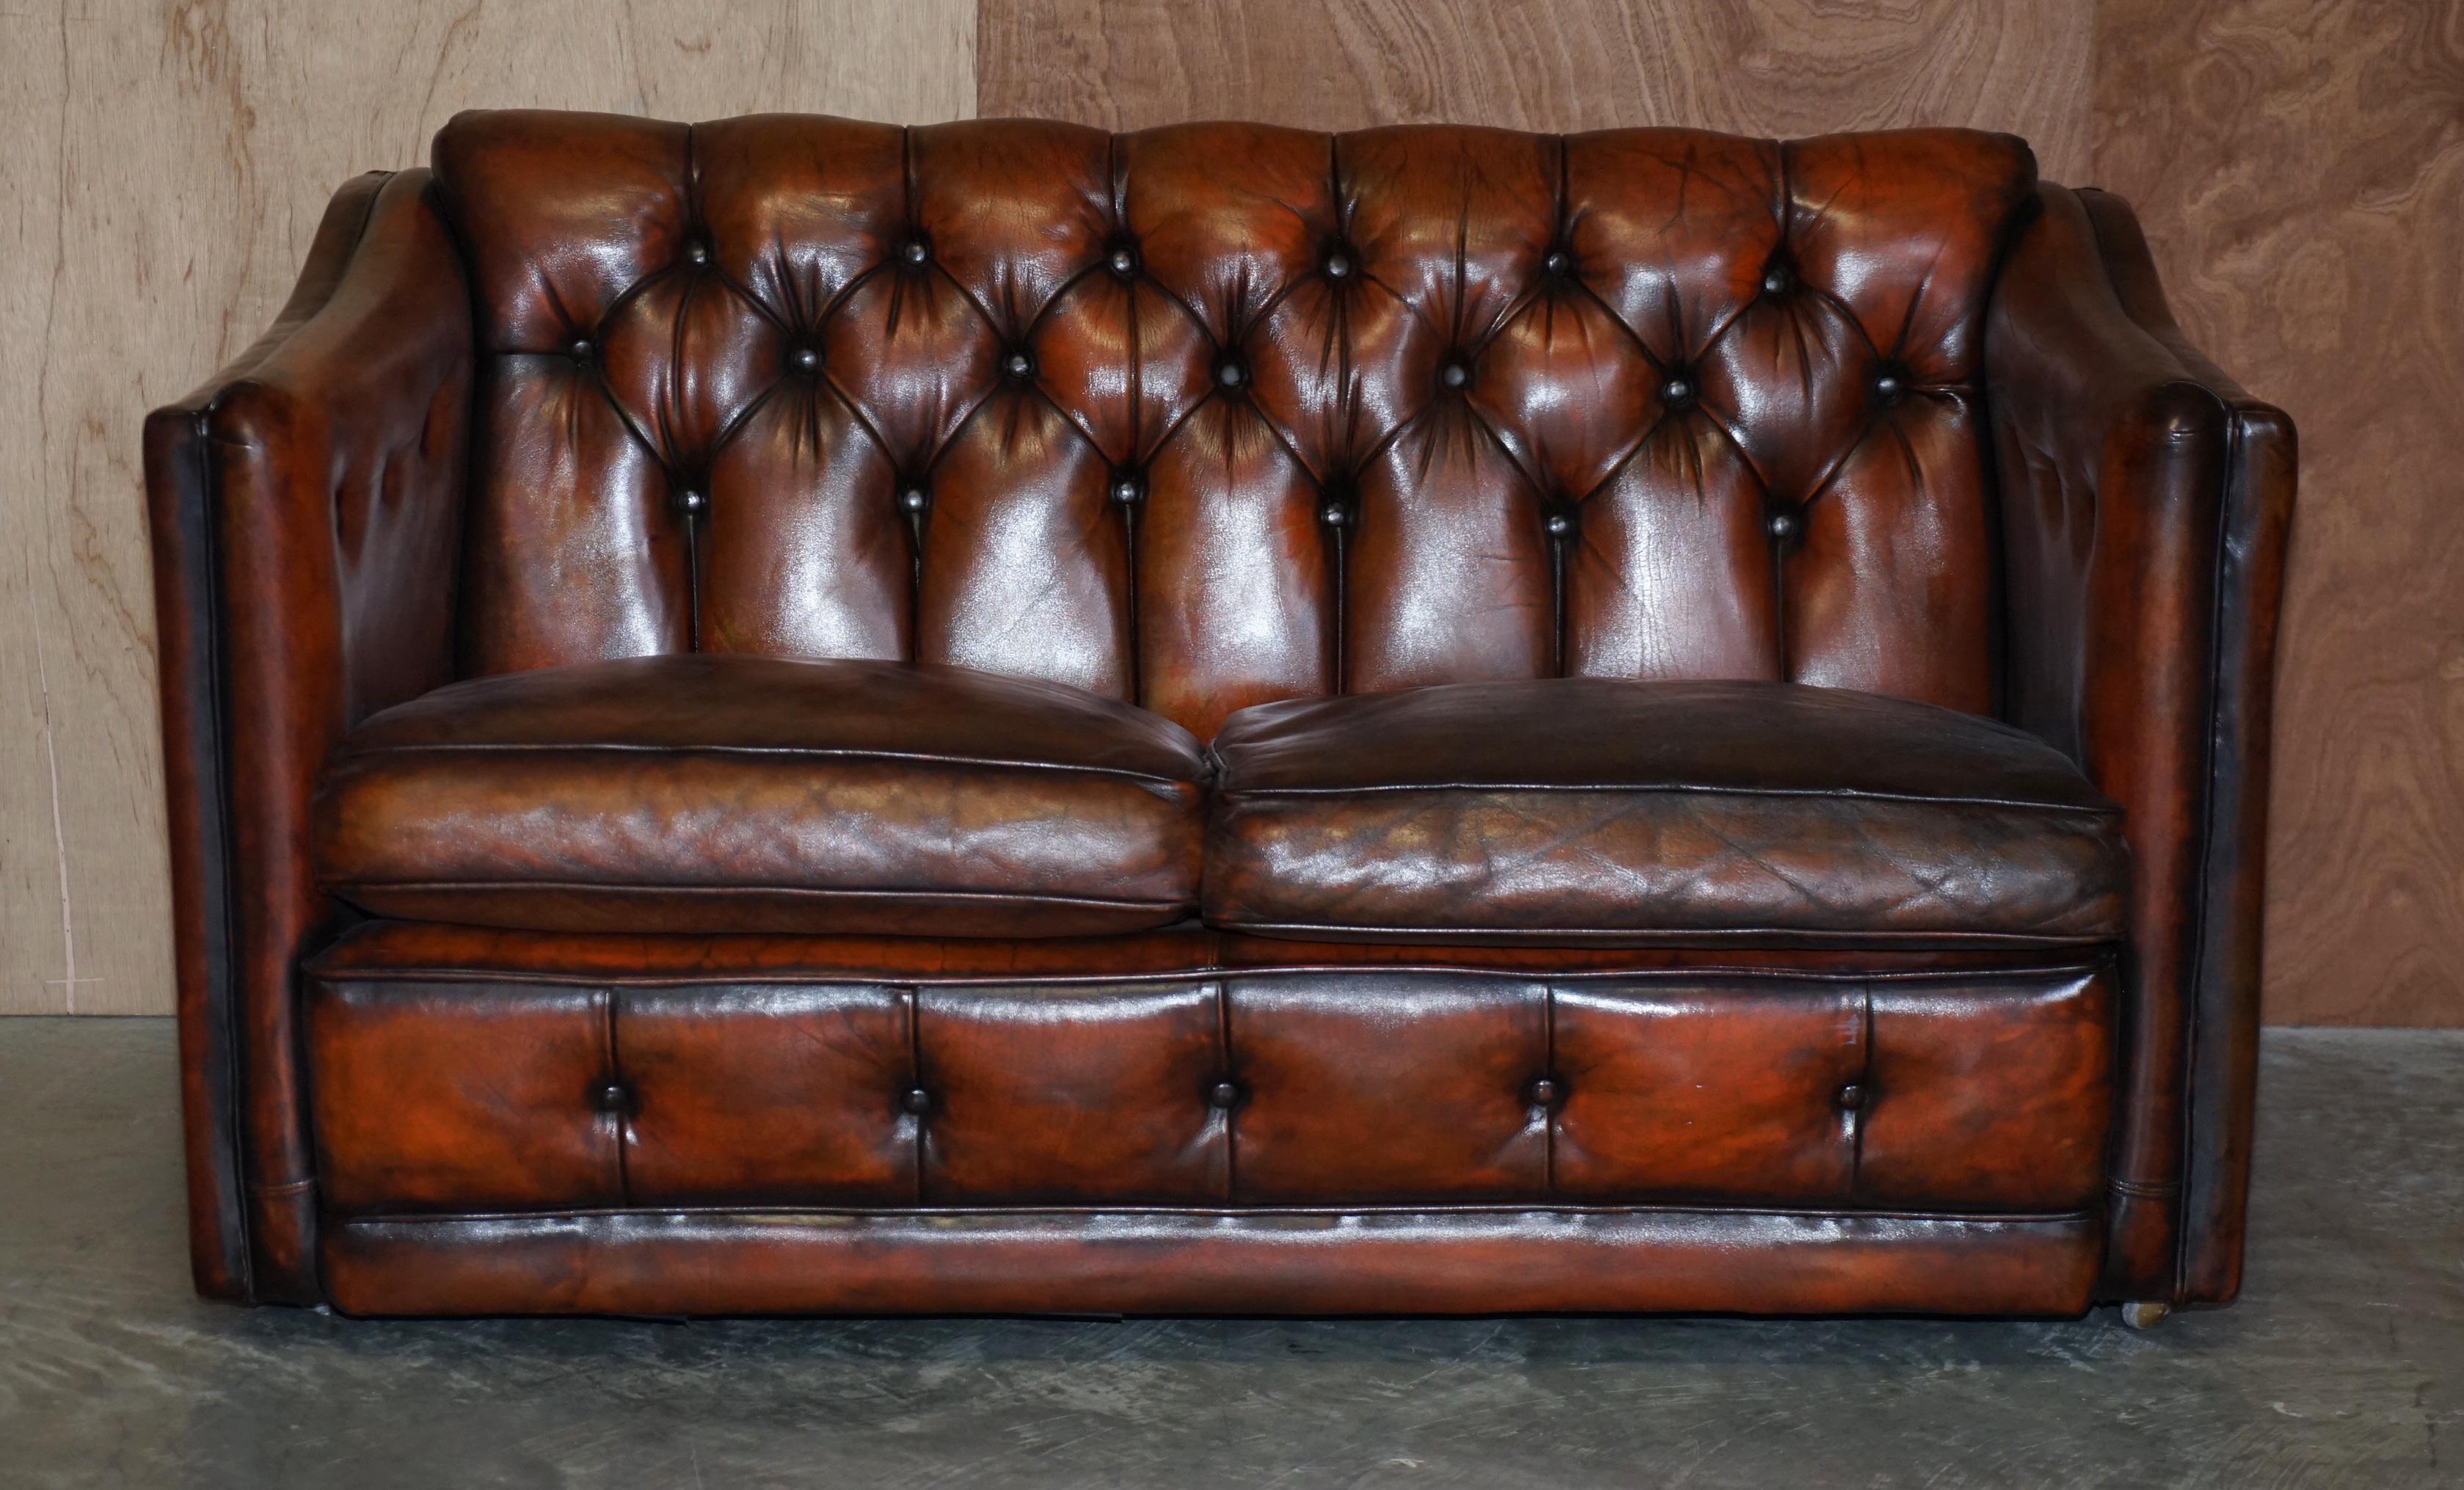 Wir freuen uns, dieses exquisite originale, vollständig restaurierte Chesterfield-Club-Sofa aus den 1920er Jahren anbieten zu können, das Teil einer Sitzgruppe ist

Dieses Sofa ist sehr stilvoll, es hat jene Metropolitan Linien, die wir in Art